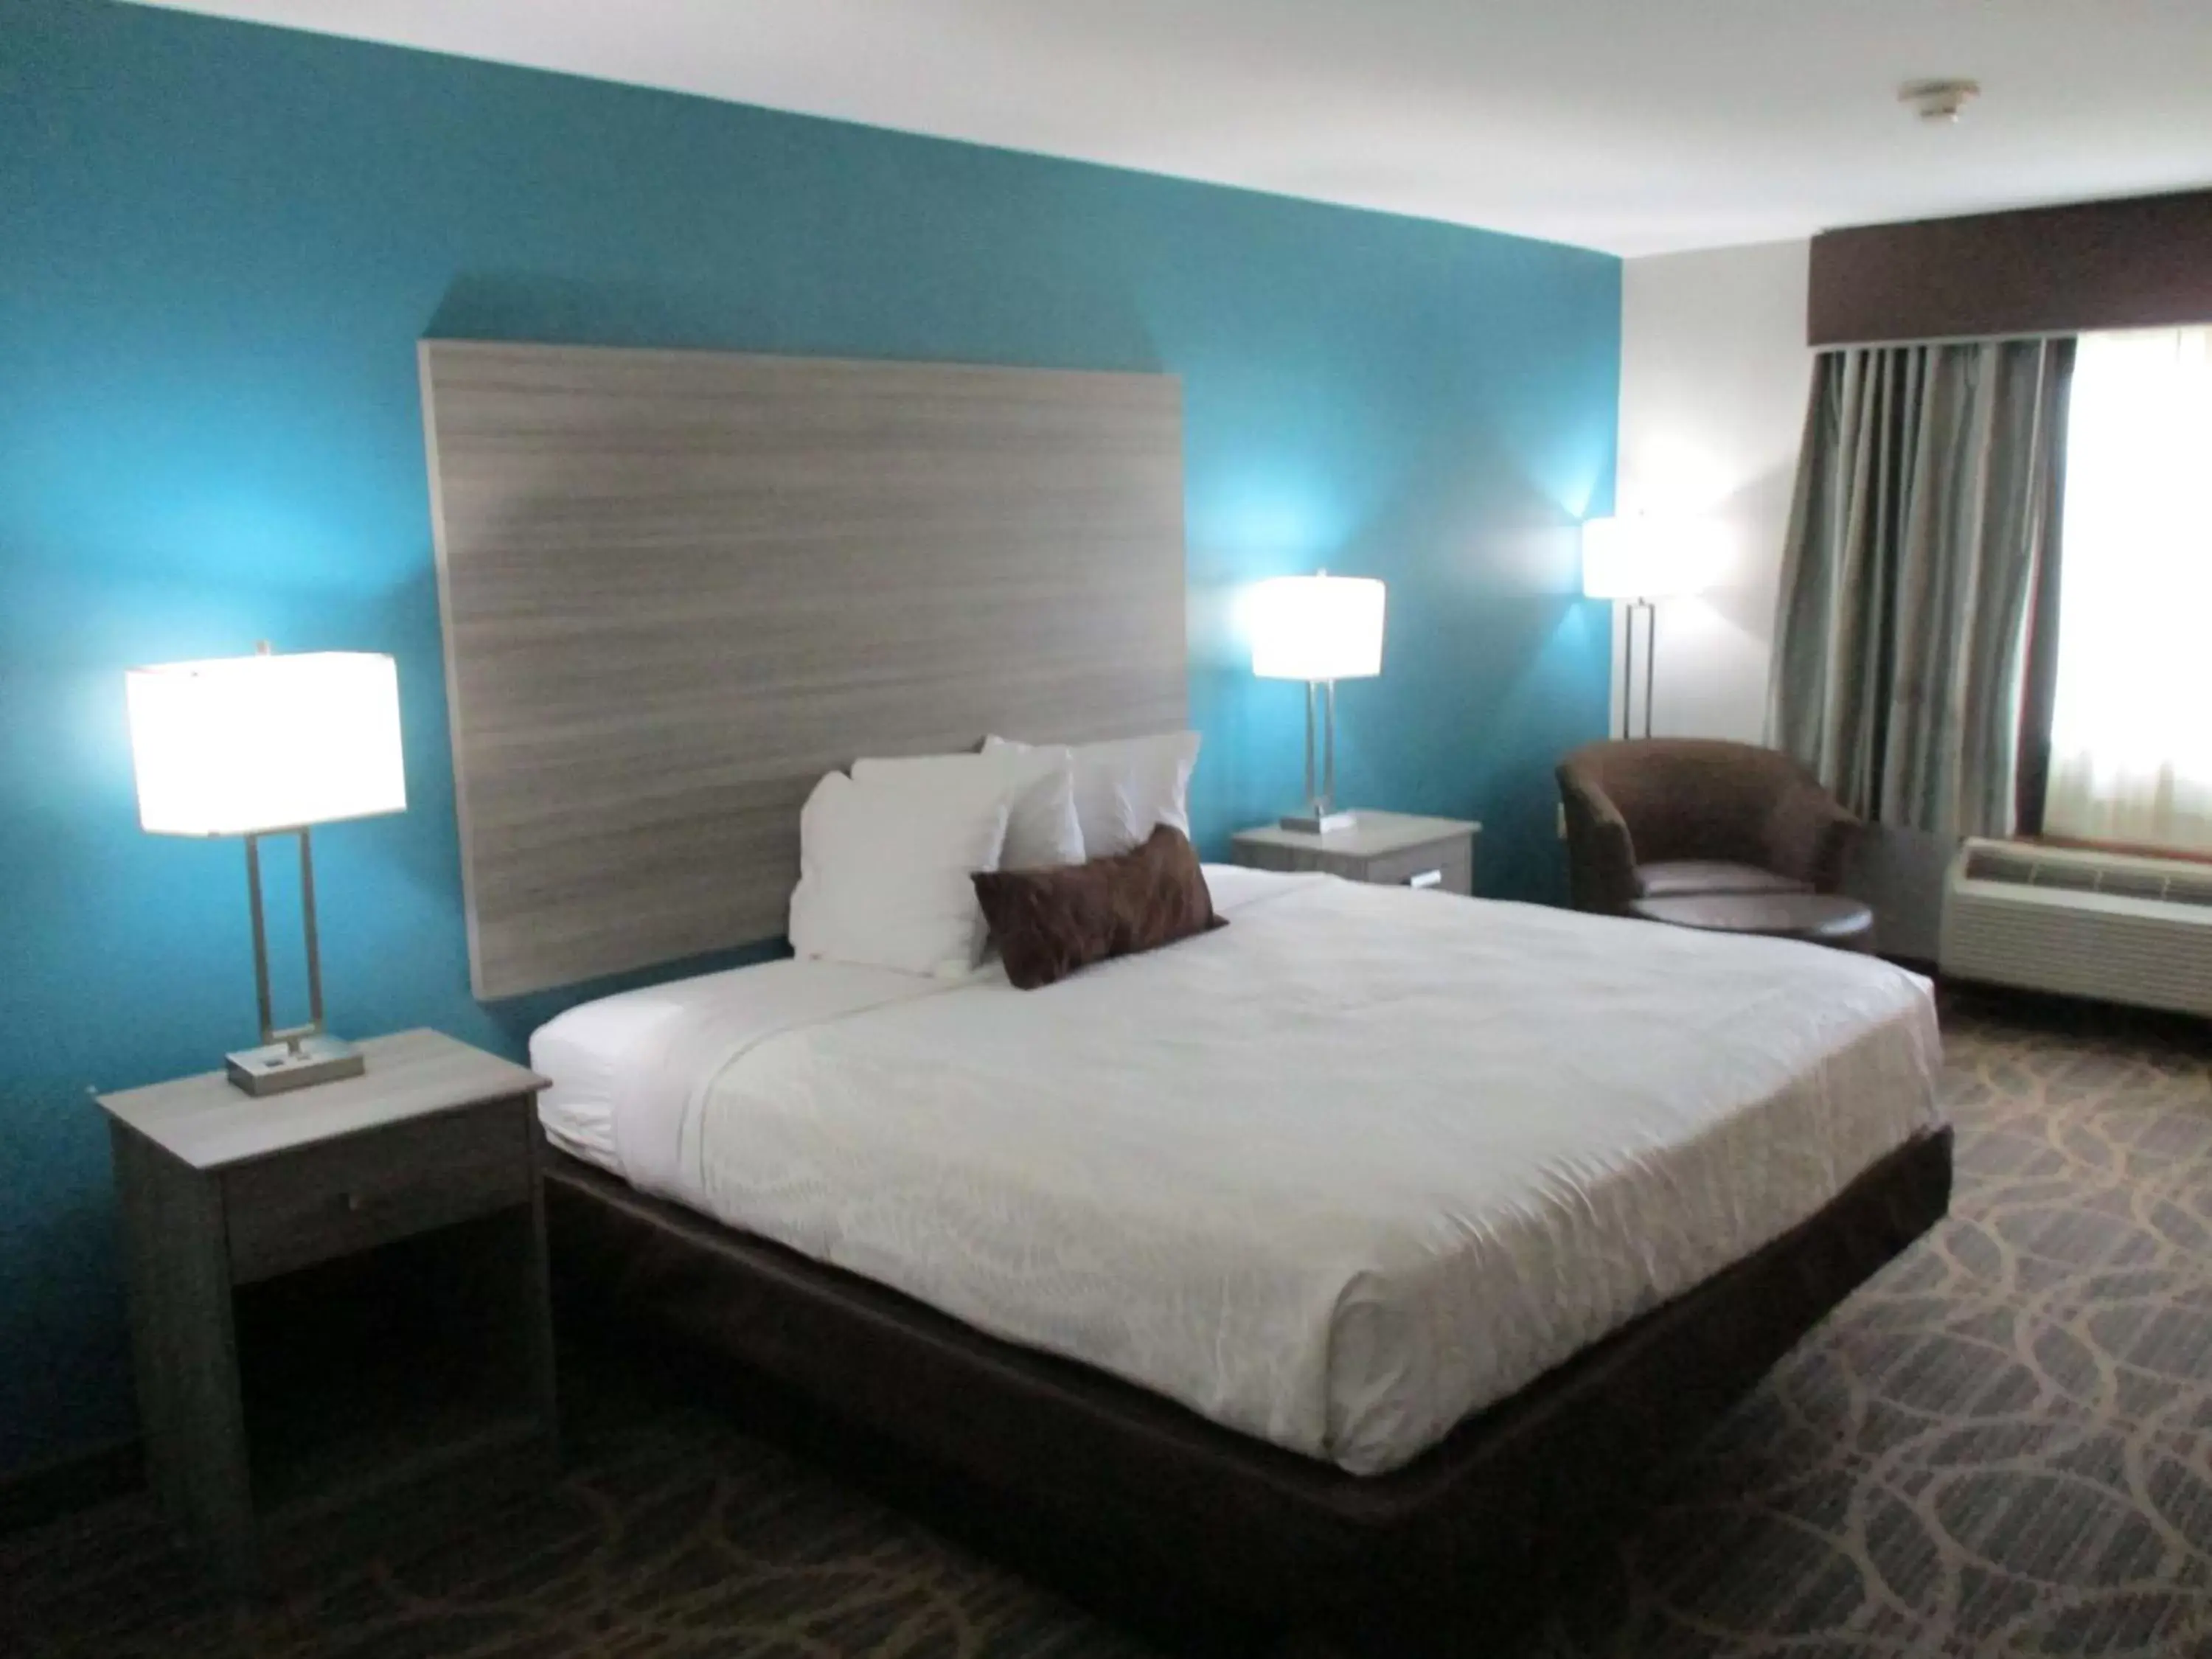 Bedroom, Bed in Best Western Presidential Hotel & Suites